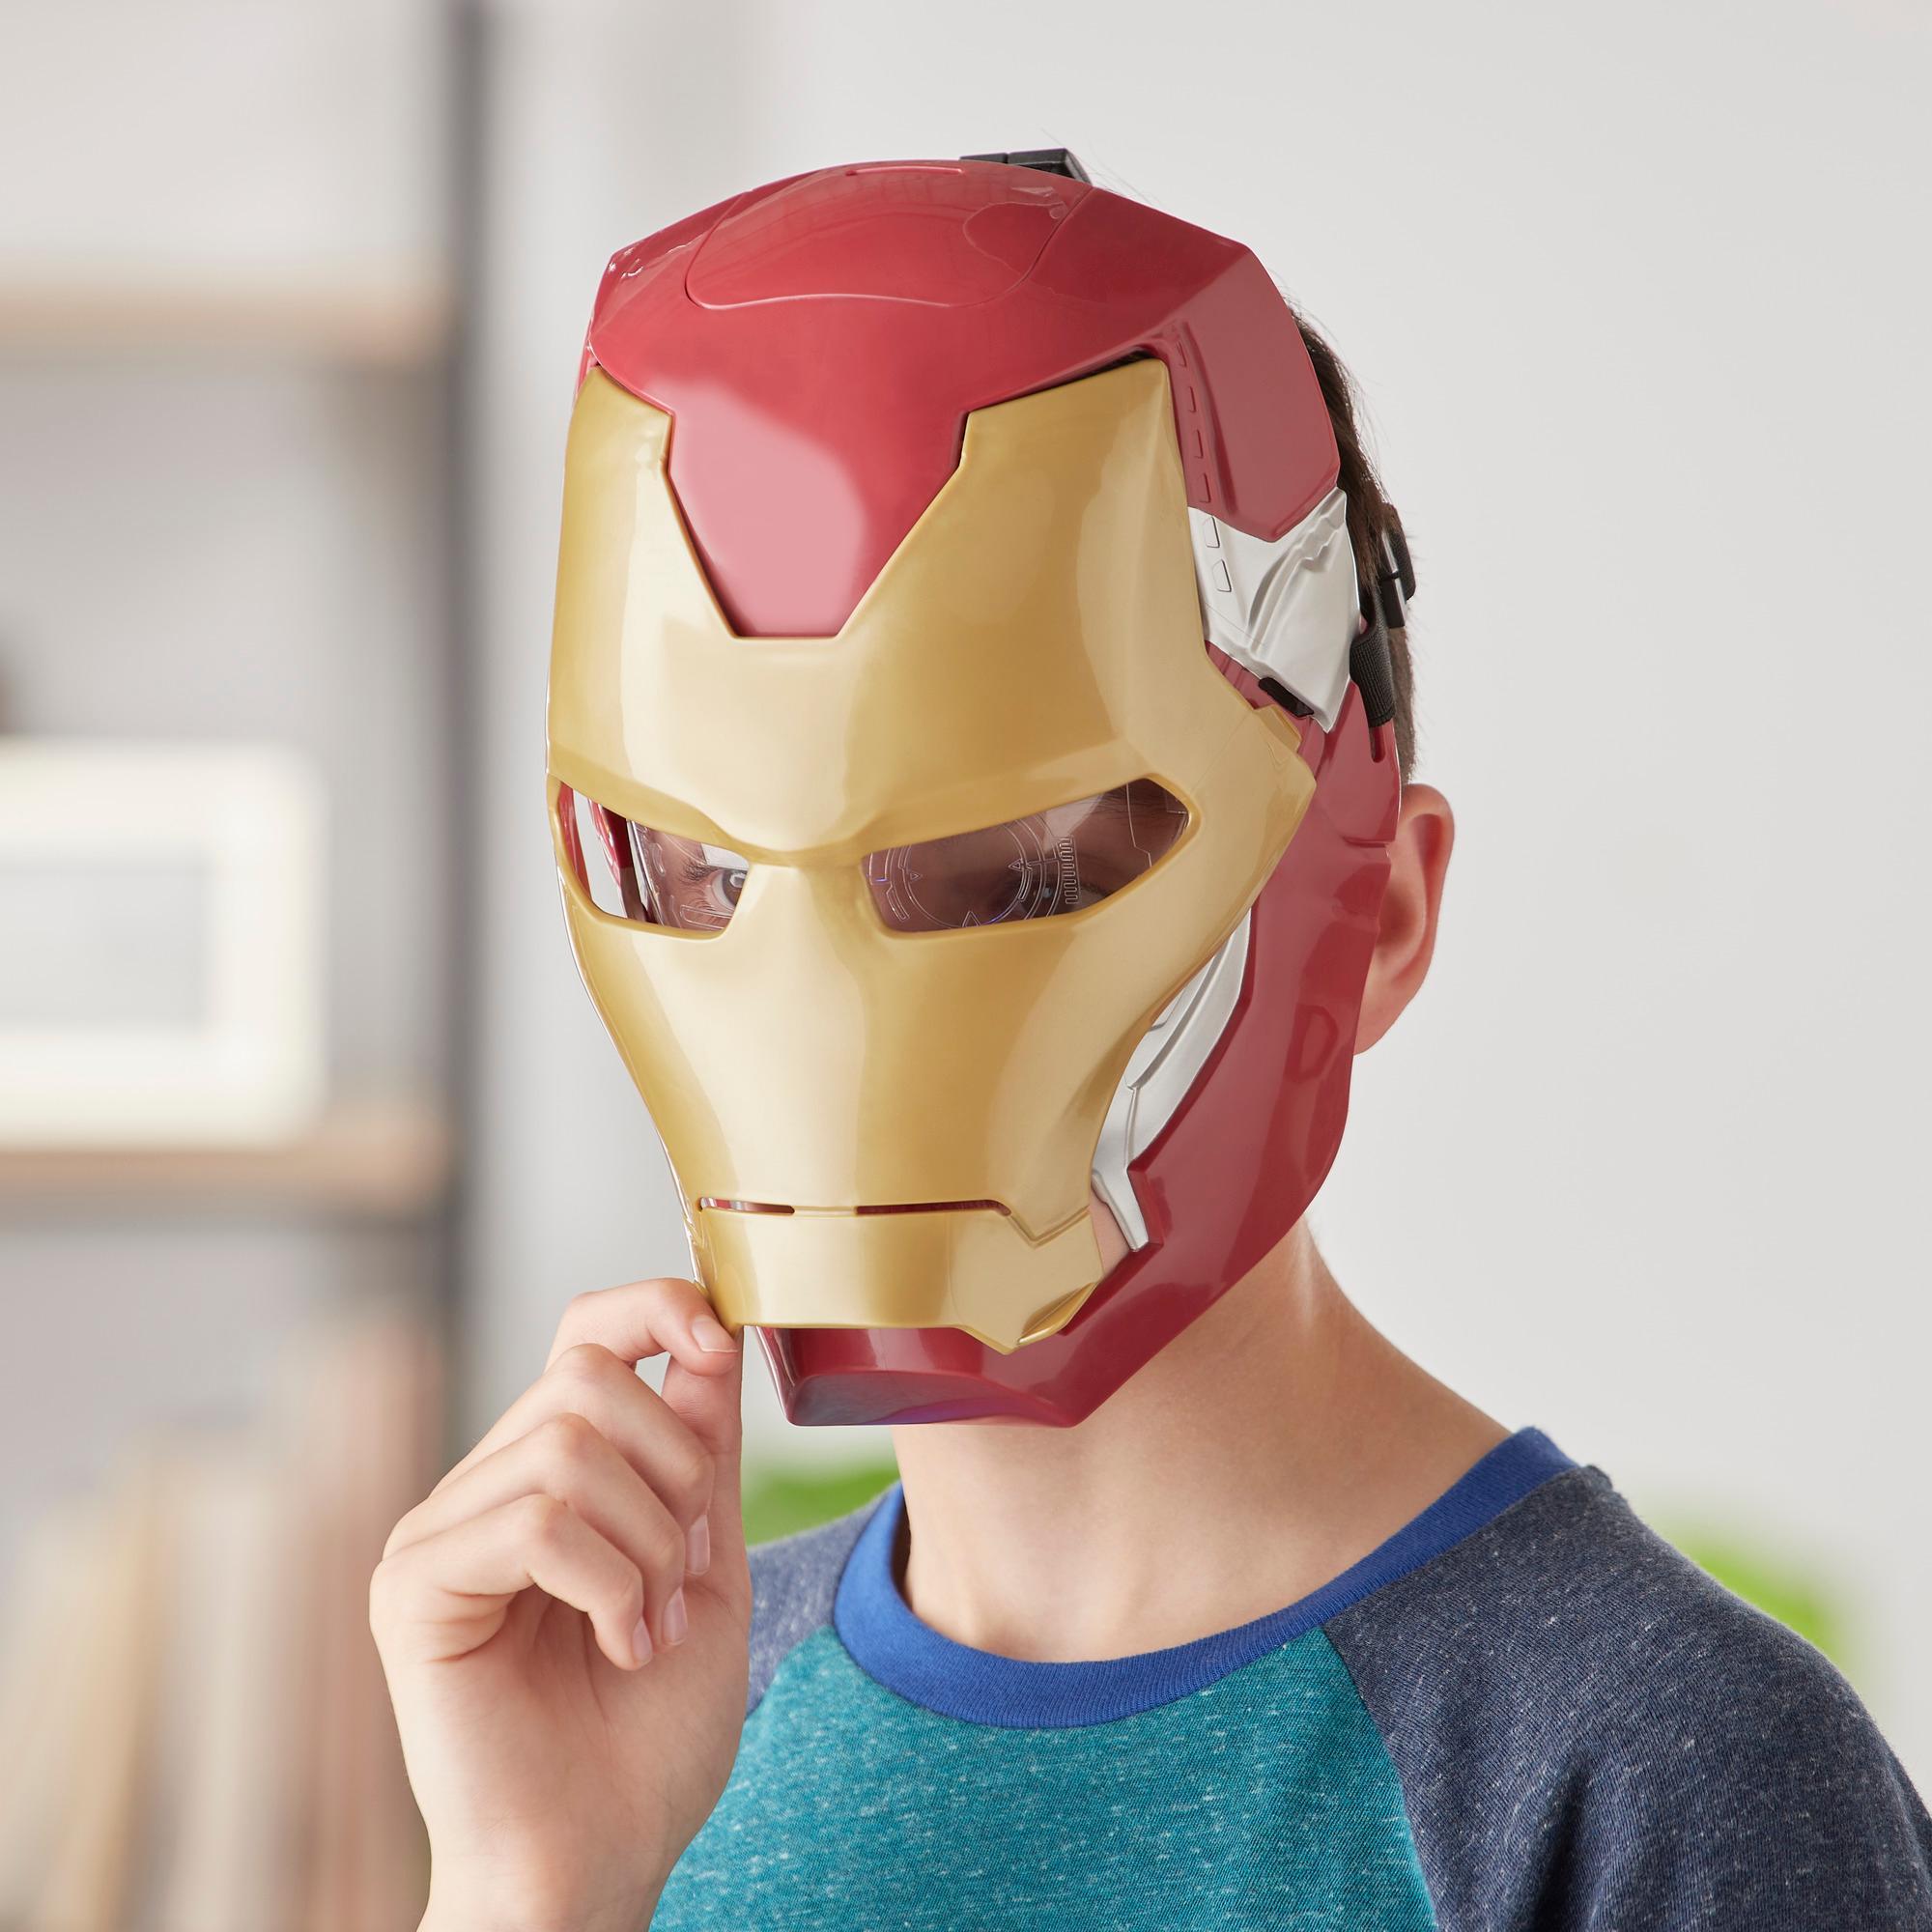 Marvel Avengers Masque à visière mobile d'Iron Man avec effets lumineux activés par la visière pour jeu costumé et jeu de rôle product thumbnail 1